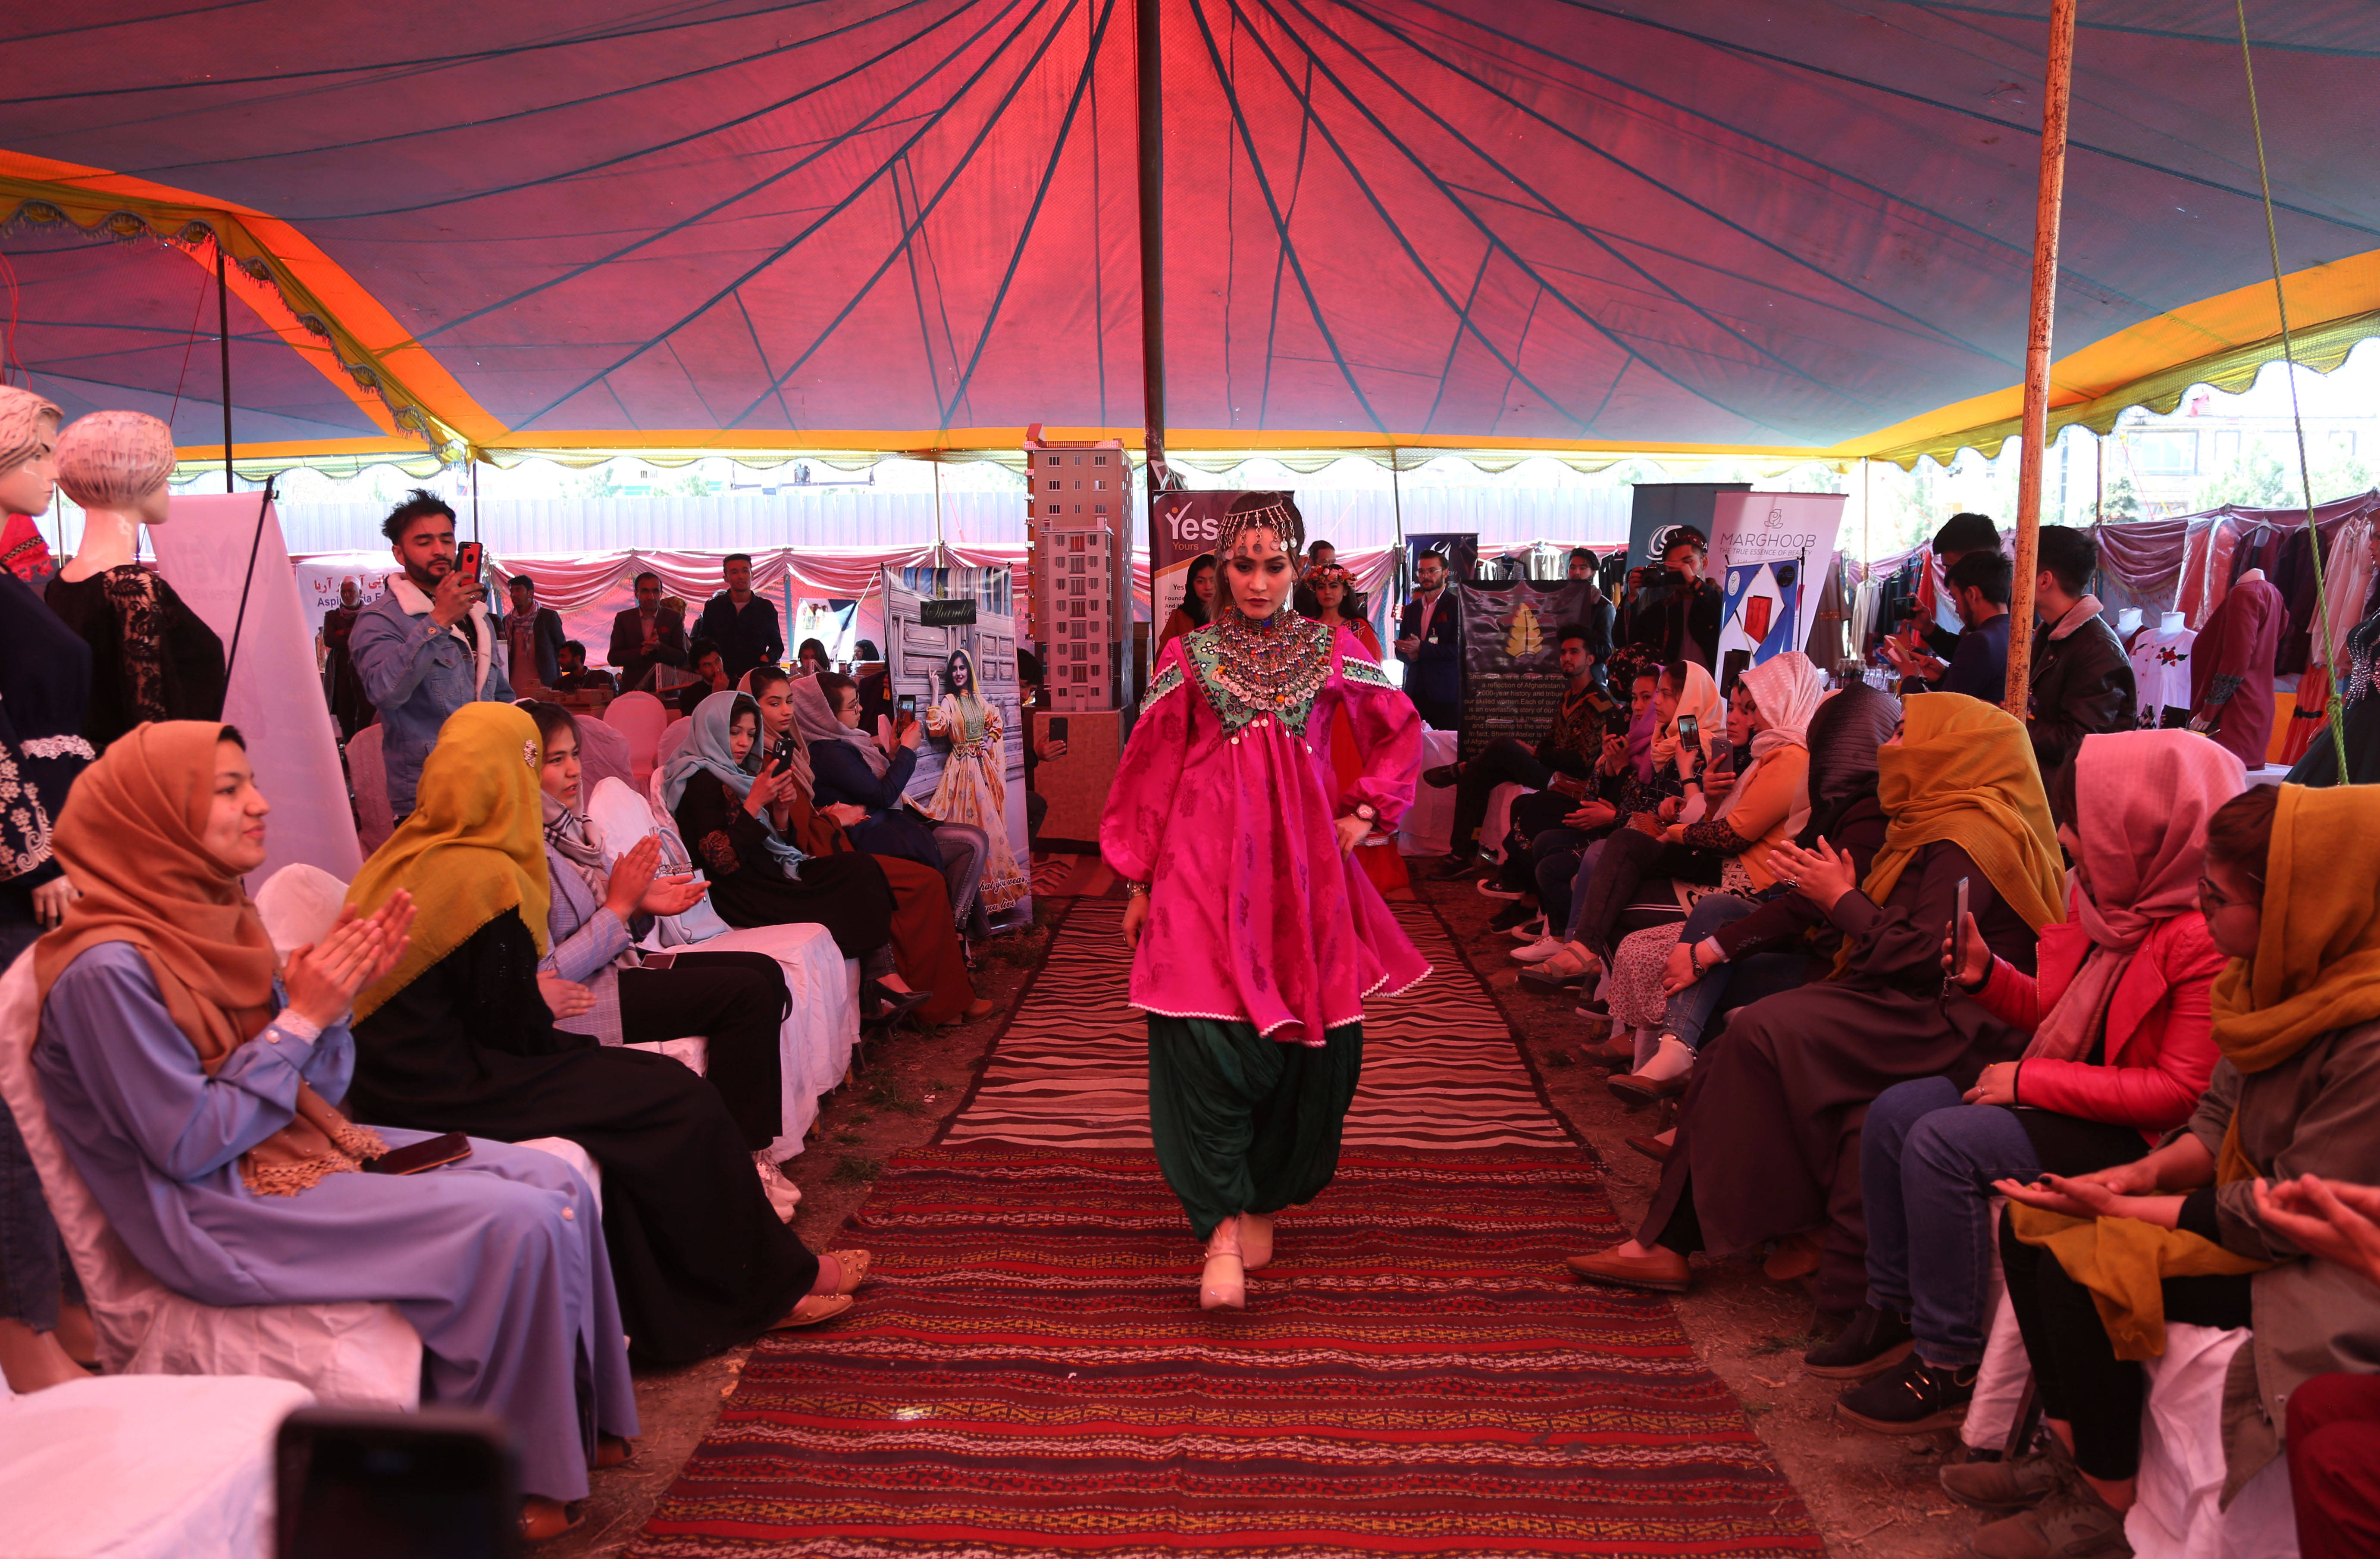 阿富汗 展销会上的服装秀pcdandan曲线难题 创造新闻网